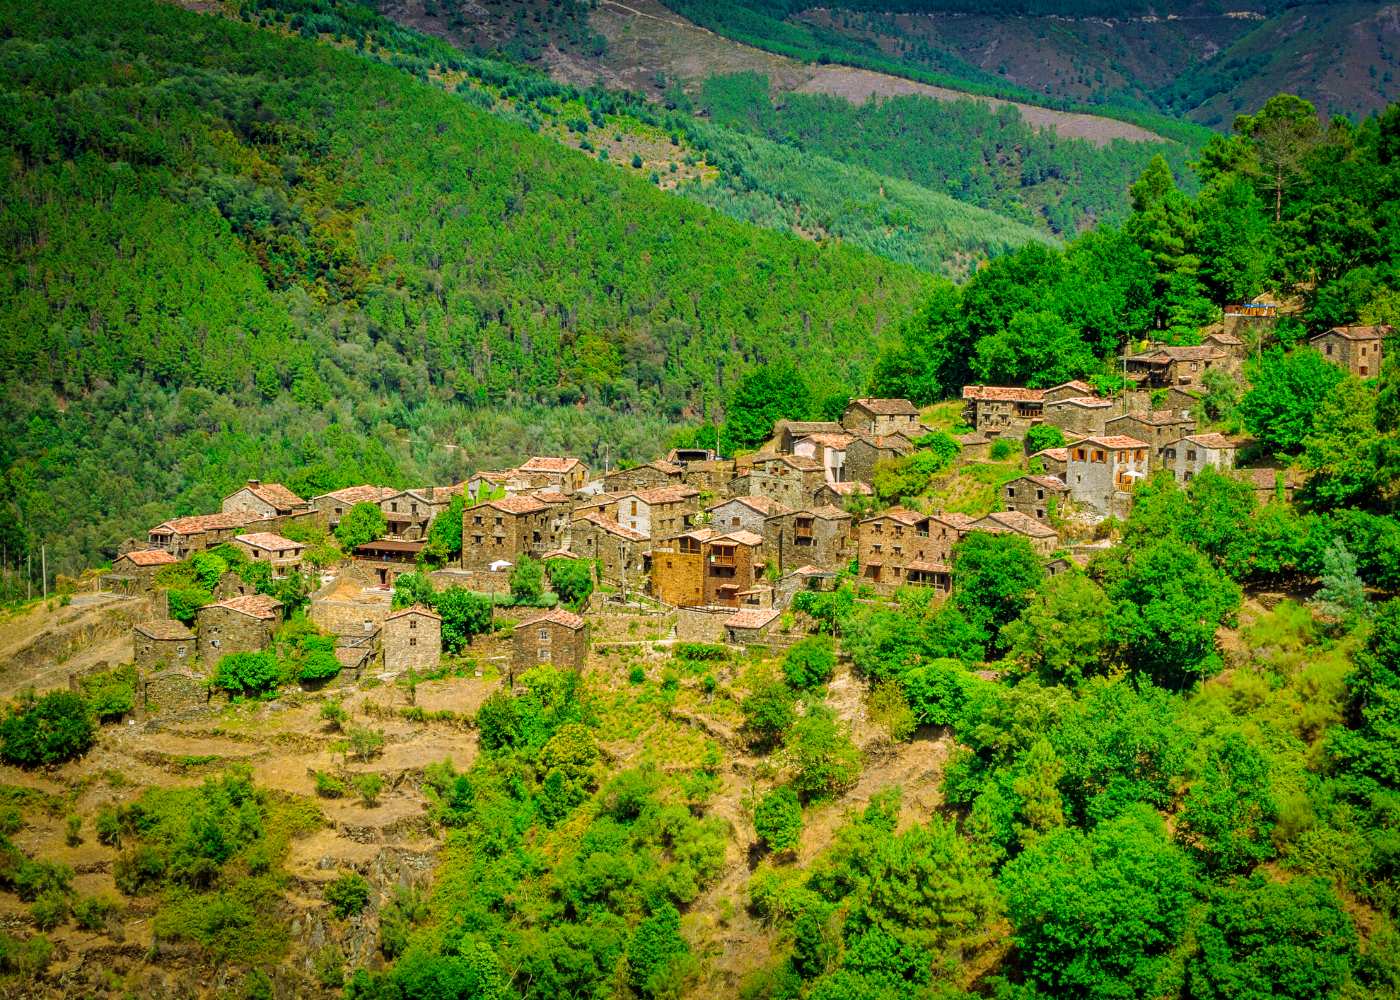 Vista da aldeia de Talasnal